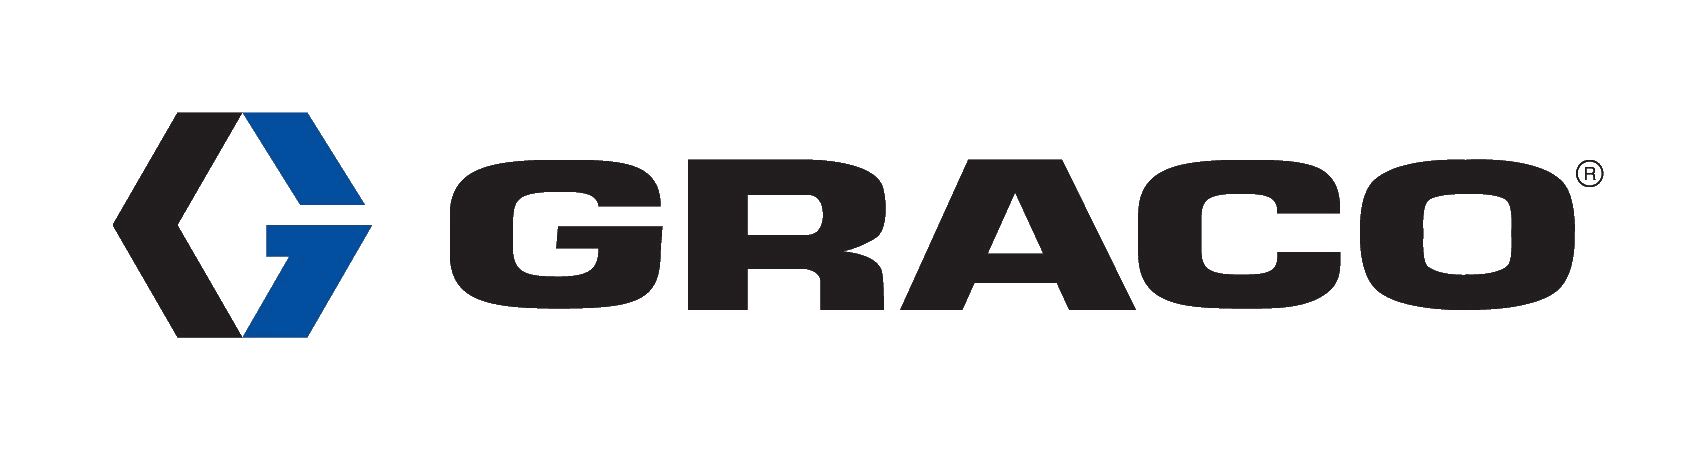 Logo Graco